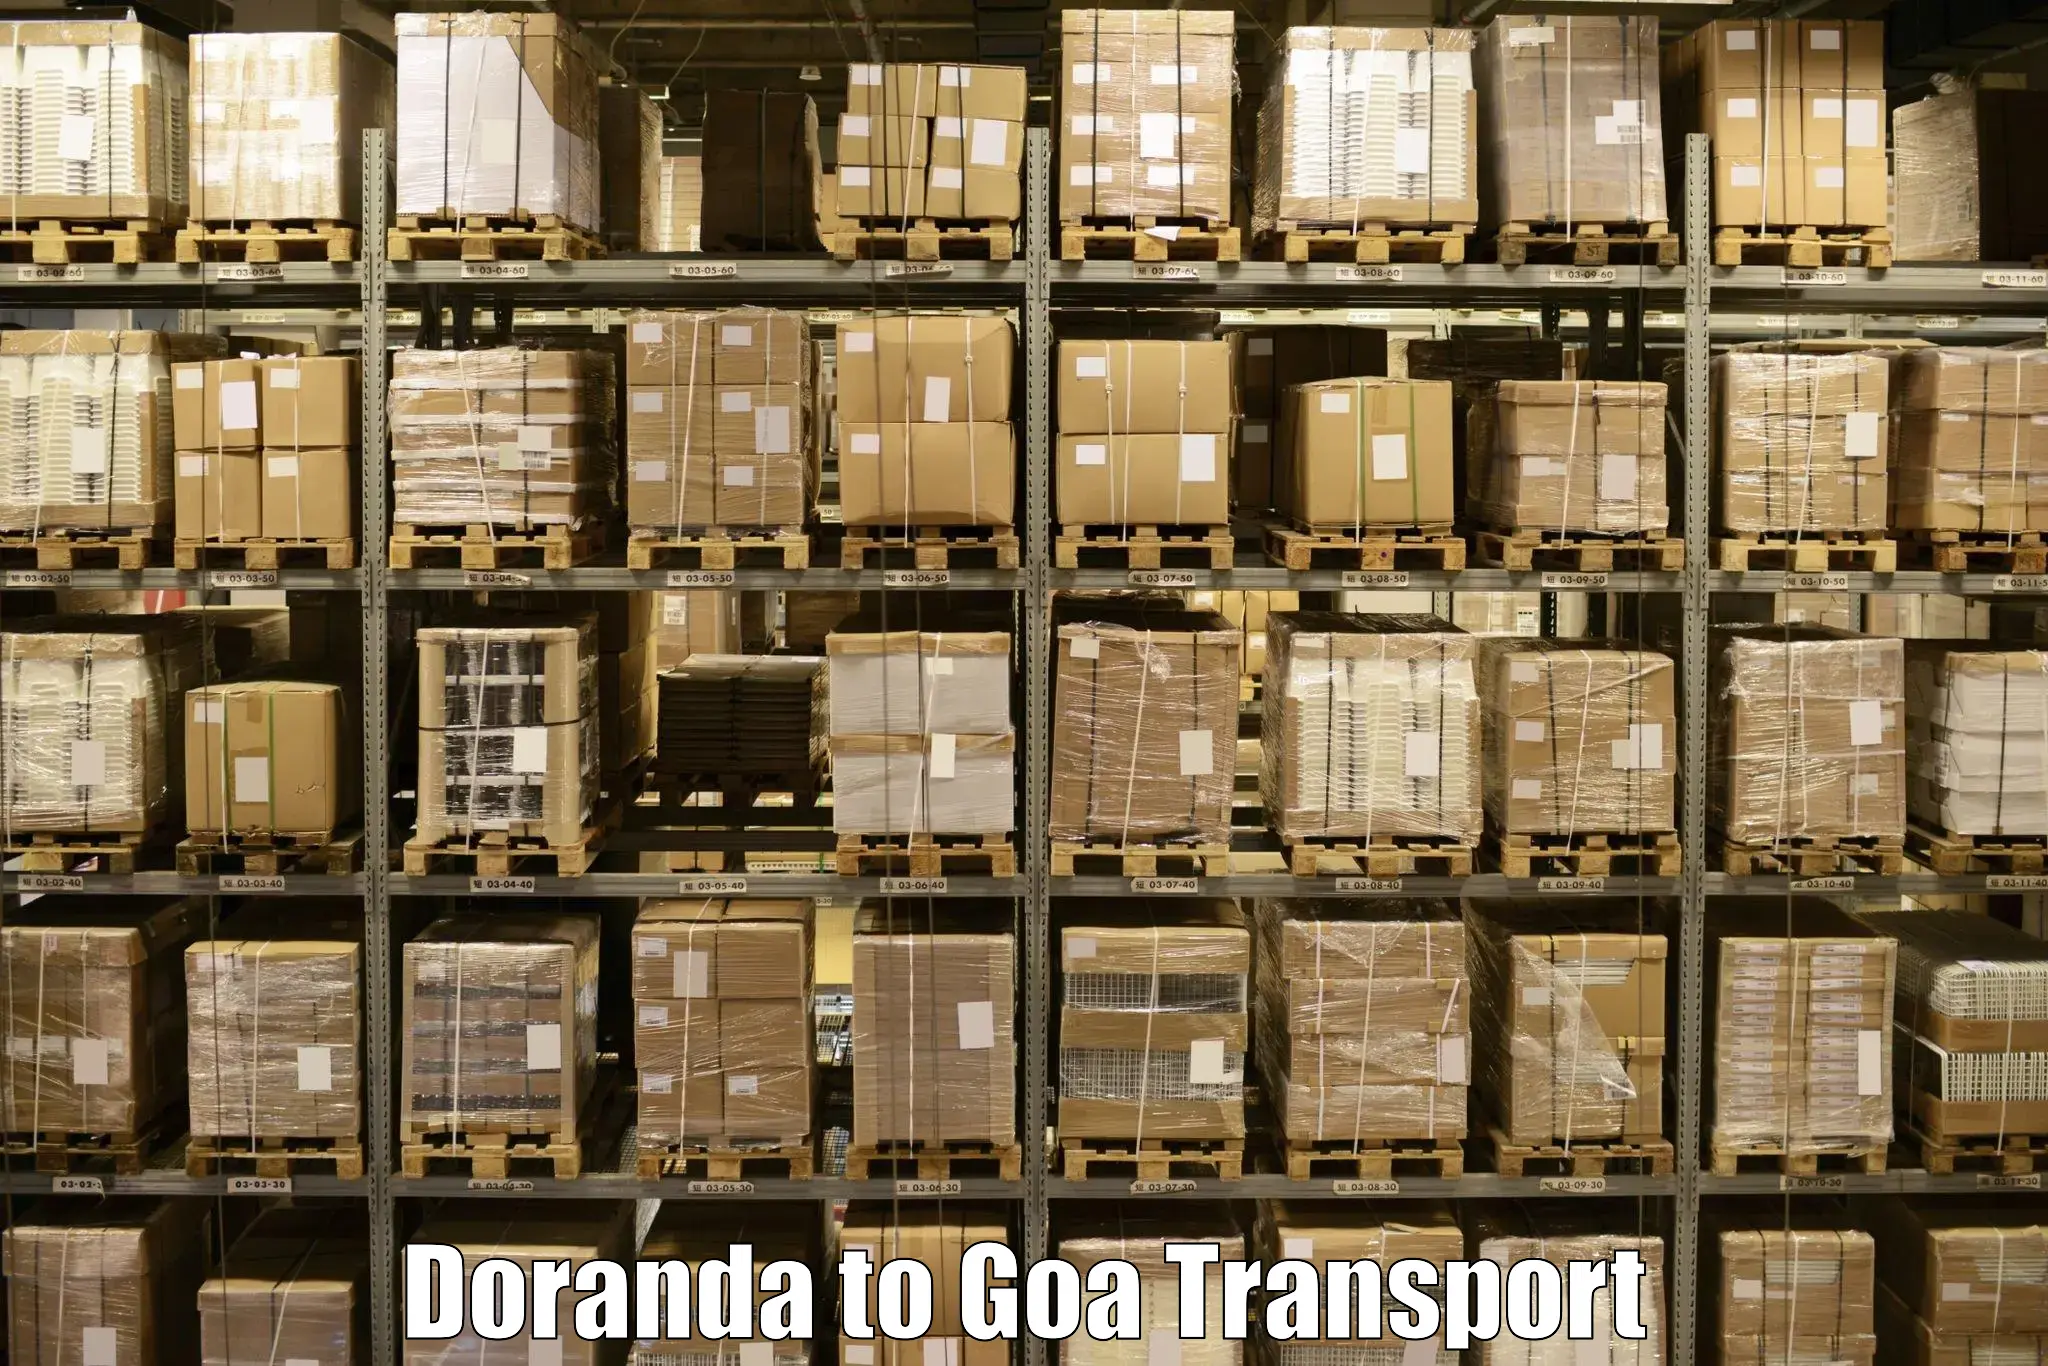 Air cargo transport services Doranda to Goa